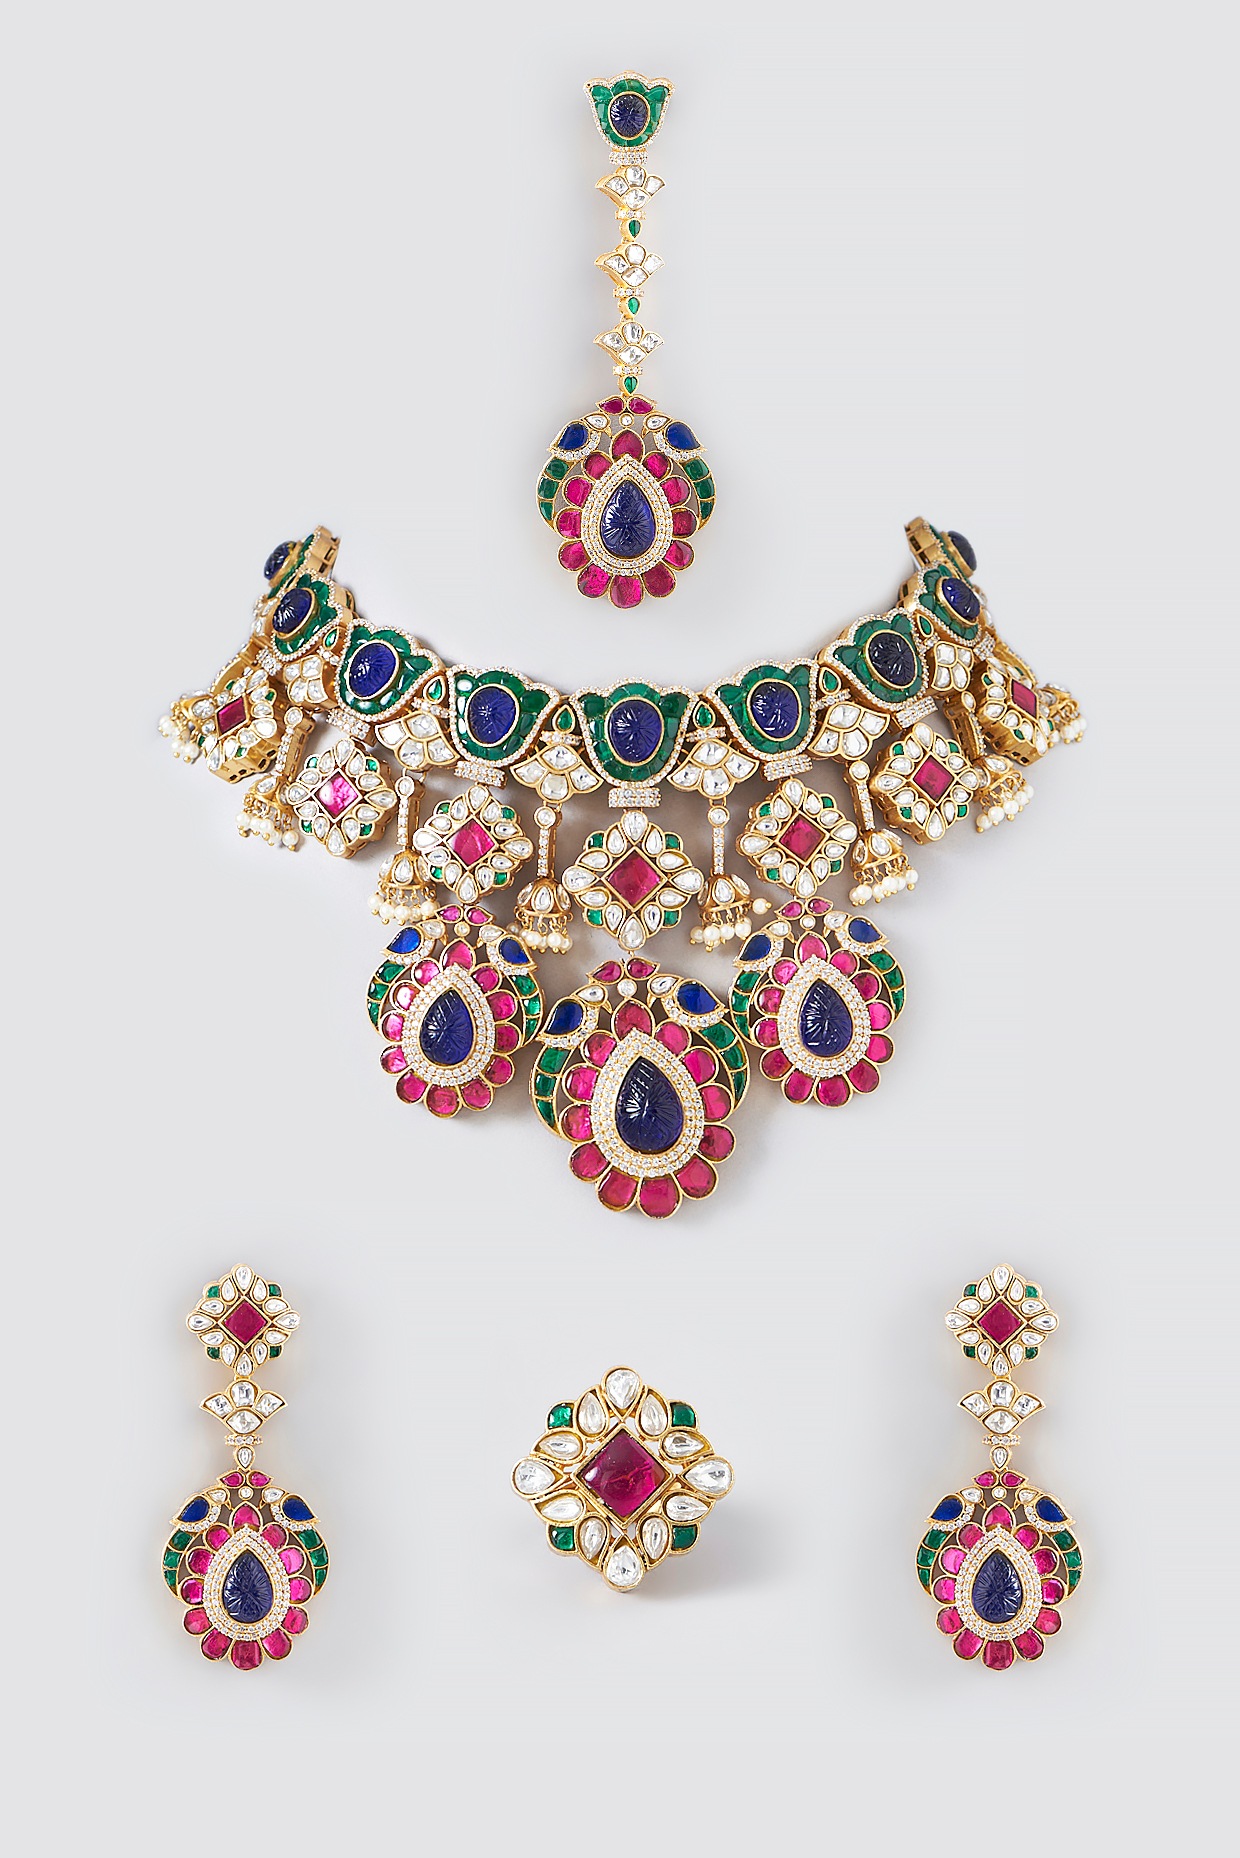 Buy Multi Coloured Chakras Semi Precious Stones in Single Line String at  Amazon.in